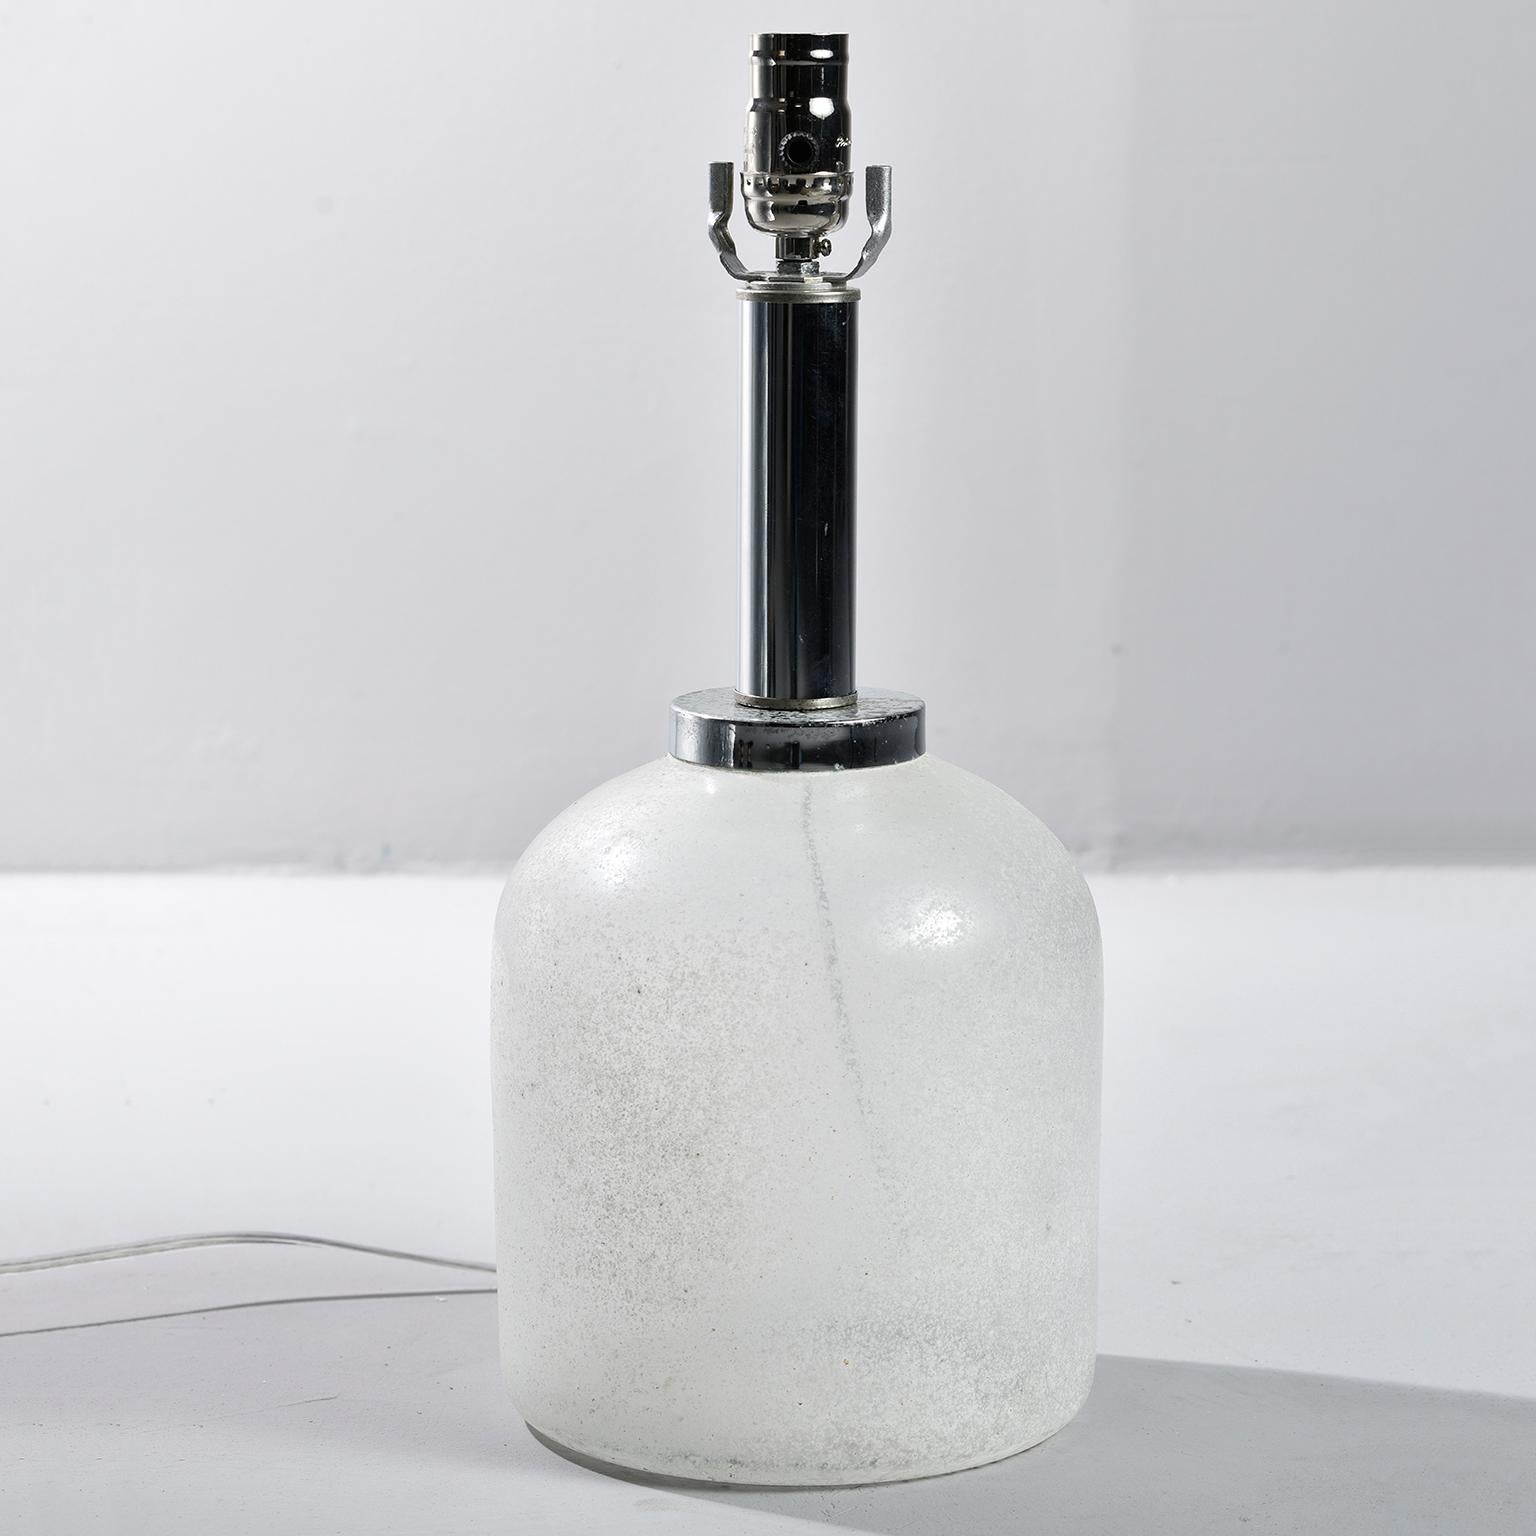 Tischlampe aus weißem Murano-Glas im Scavo-Stil von Seguso Vetri d'Arte, ca. 1970er Jahre. Verchromte Hardware. Neue Verdrahtung für US-Elektrostandards. Der abgebildete Schirm ist nicht enthalten. Der Glassockel ist nur 9,5